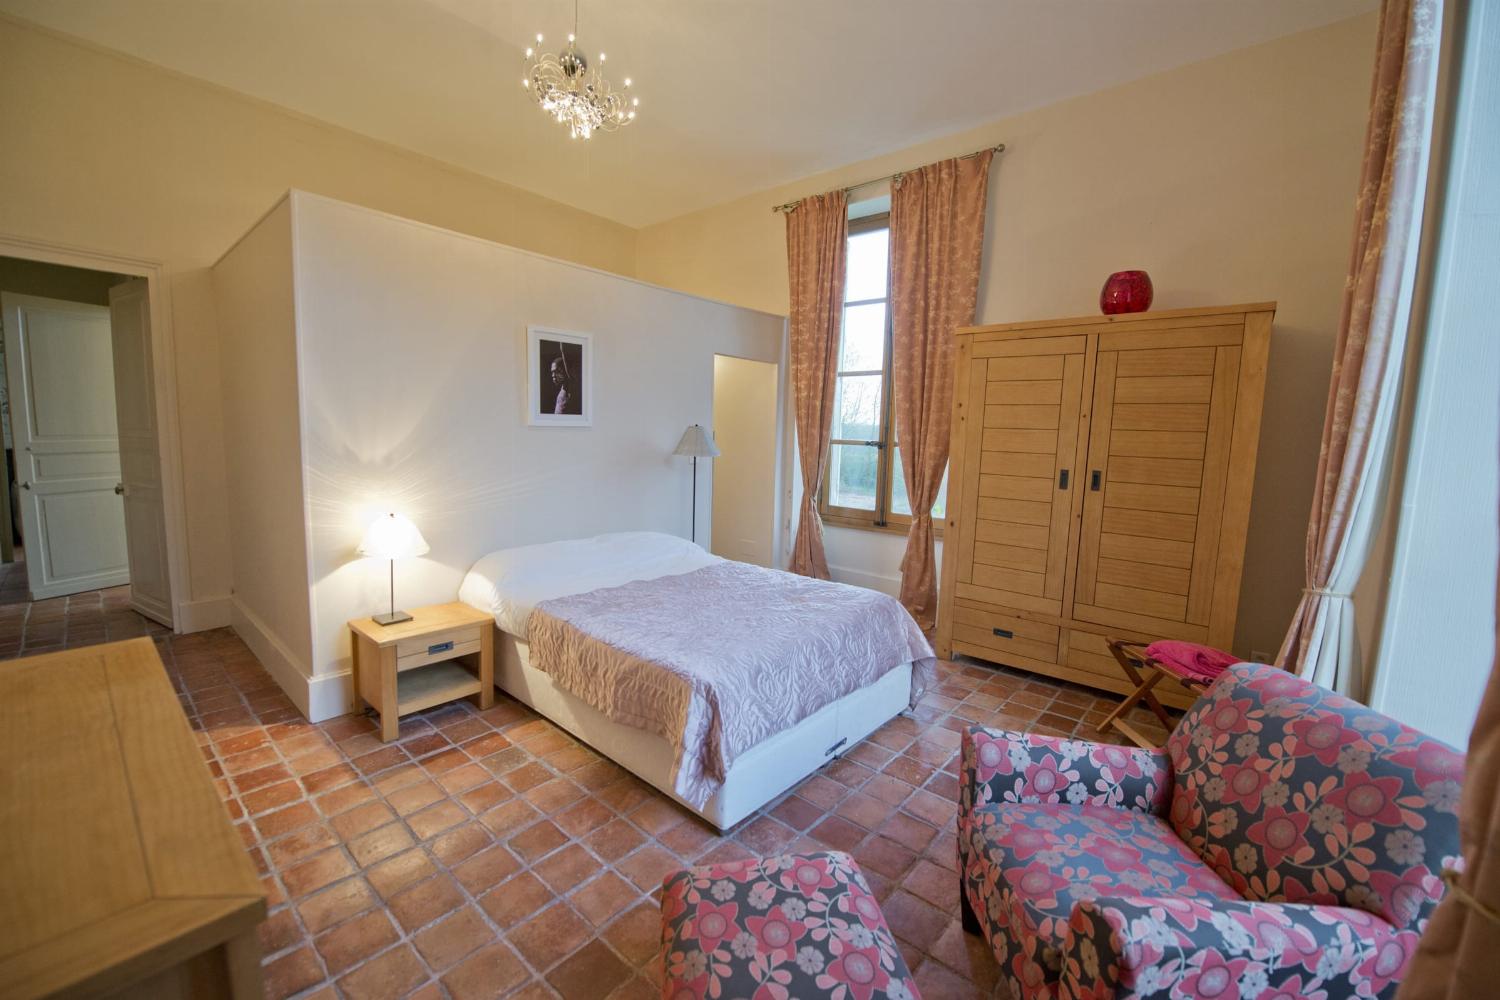 Bedroom | Rental château in Loire